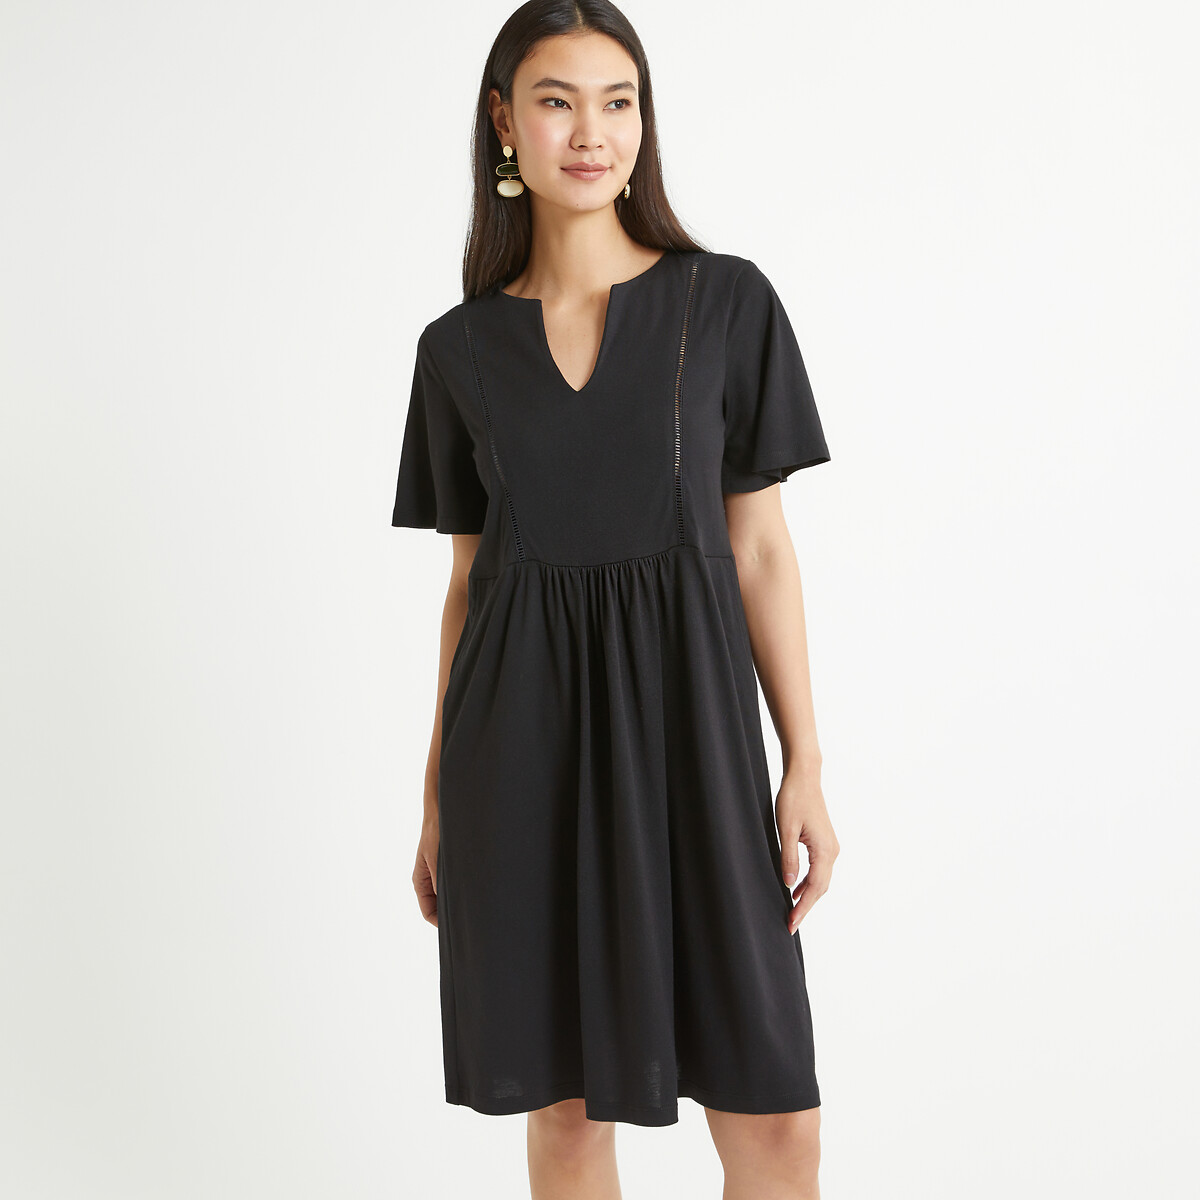 Платье-миди прямое с короткими рукавами 48/50 черный платье la redoute прямое двухцветное с короткими рукавами s черный